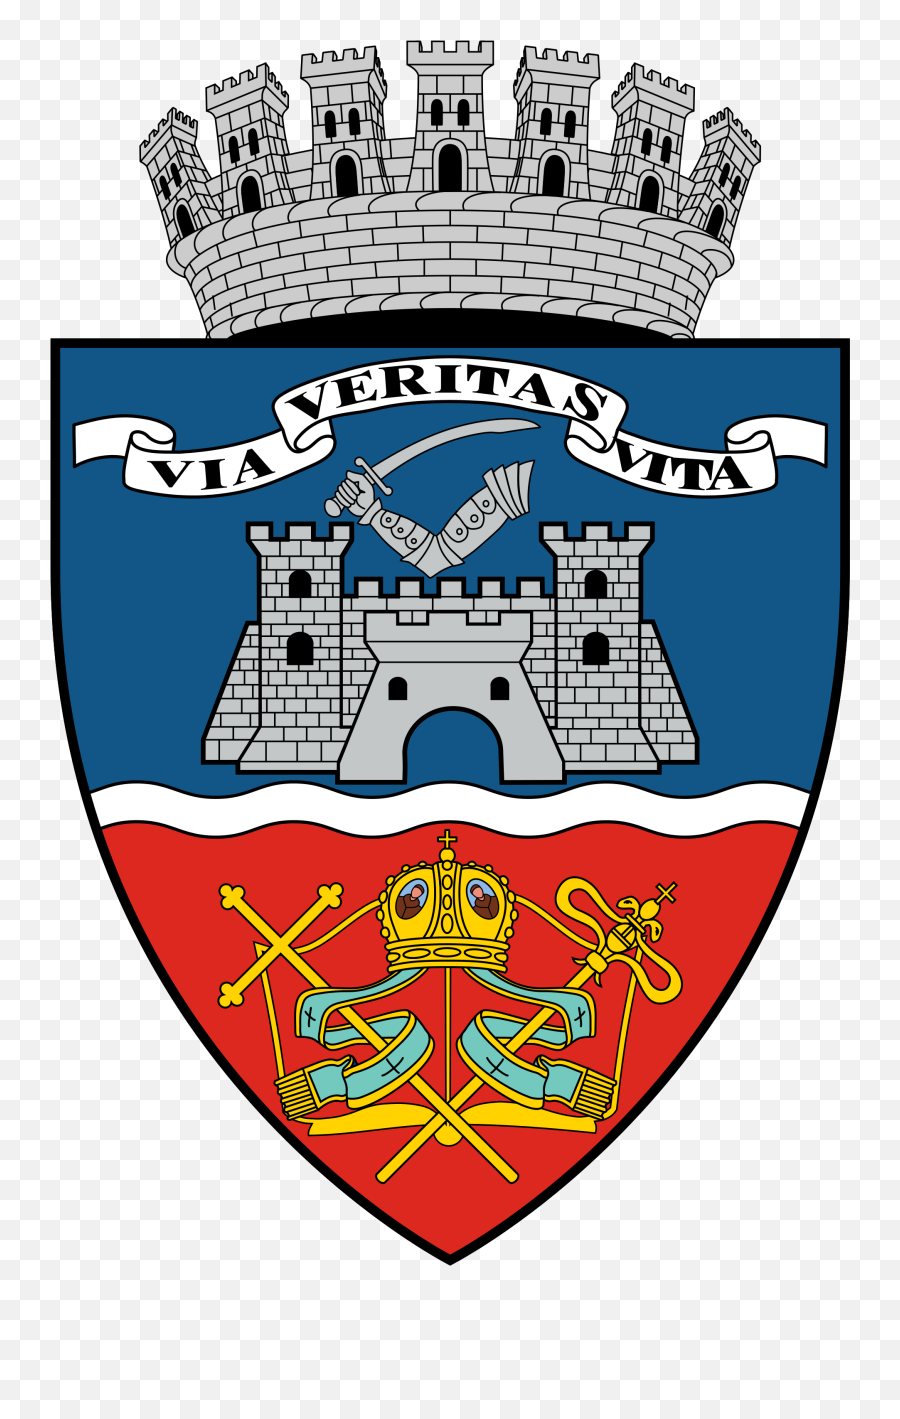 Via Et Veritas Et Vita - Scientia Potentia Est Motto 500 Military Intelligence Emoji,Emoji Sentences Without Words